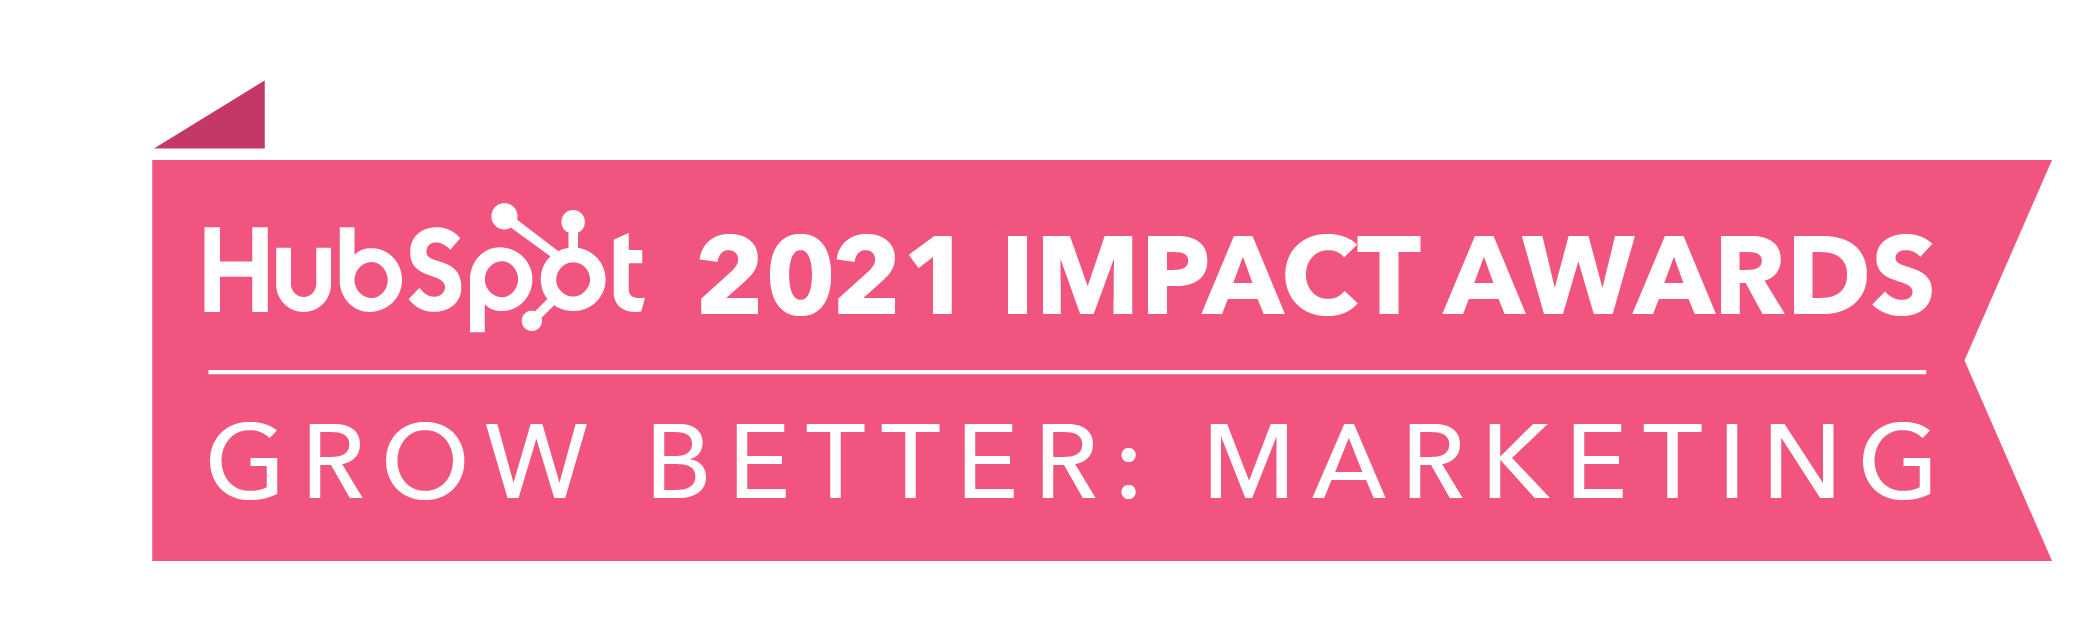 HubSpot_ImpactAwards_2021_GBMarketing2-3